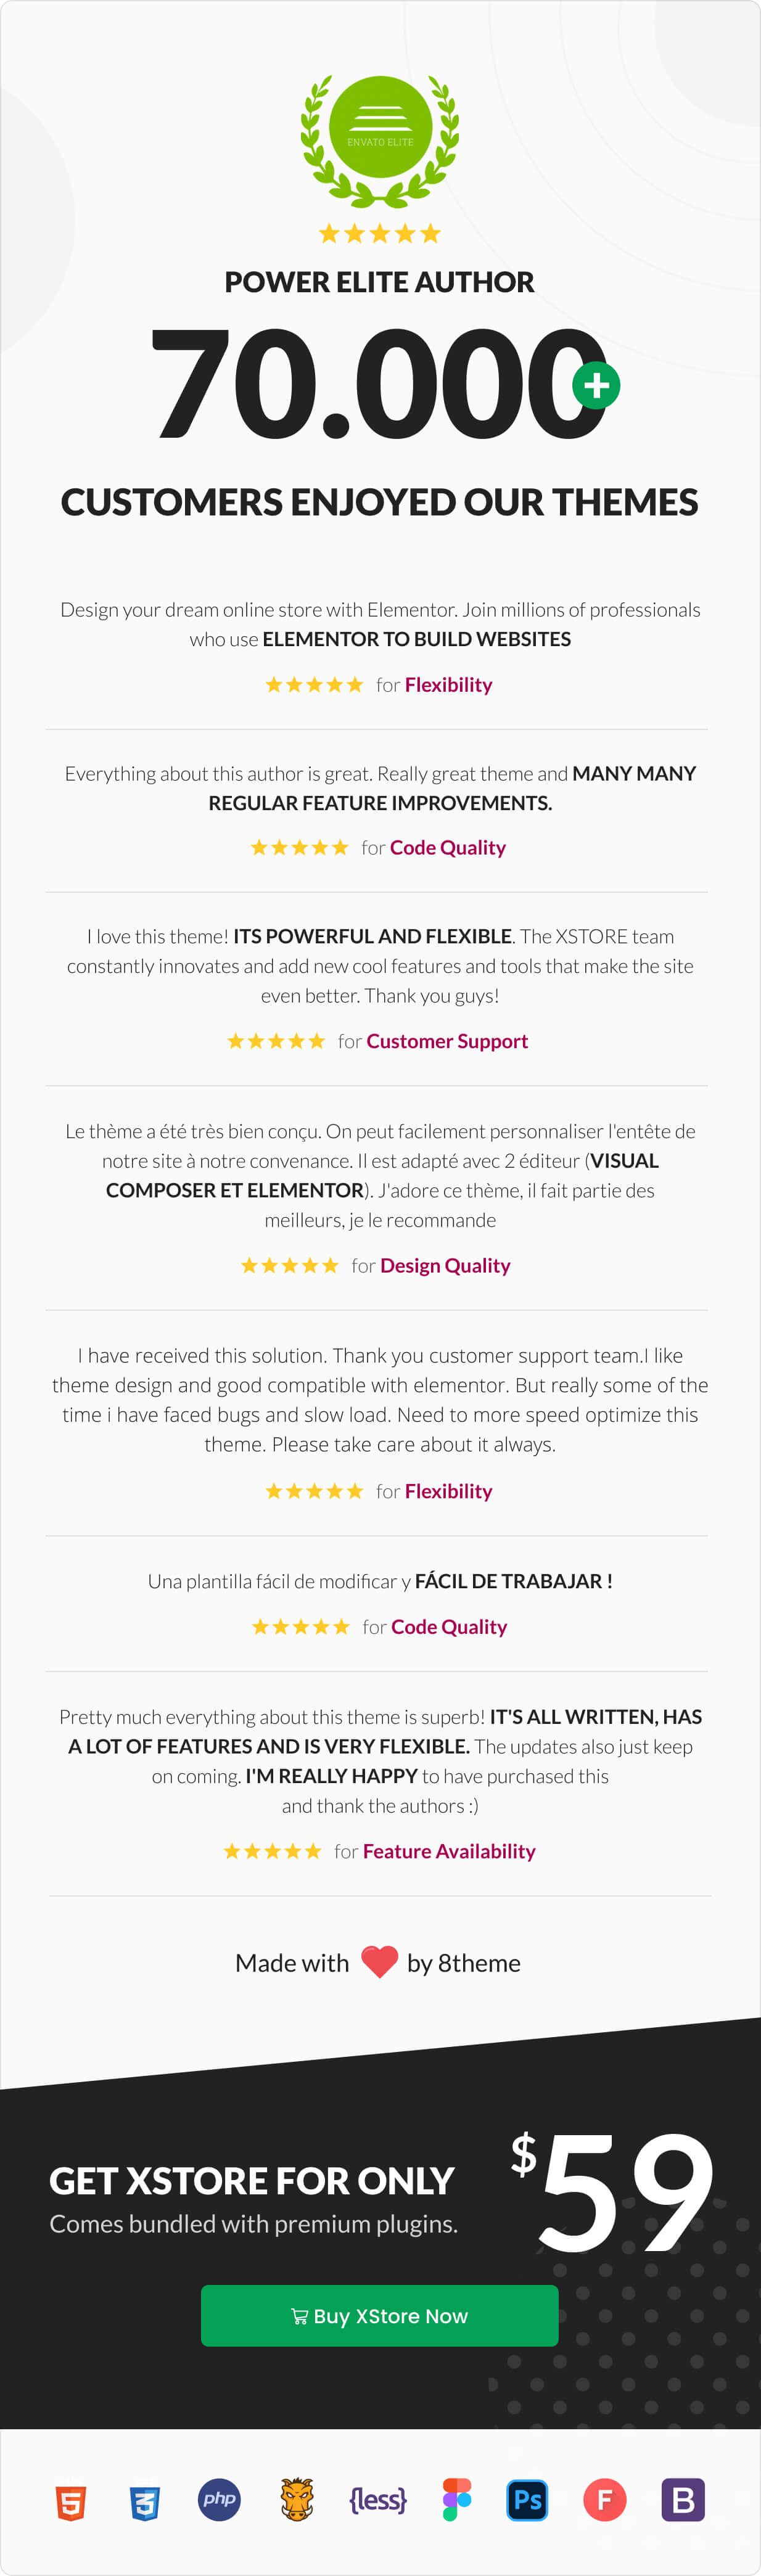 XStore - Multipurpose Responsive WordPress WooCommerce Theme 21